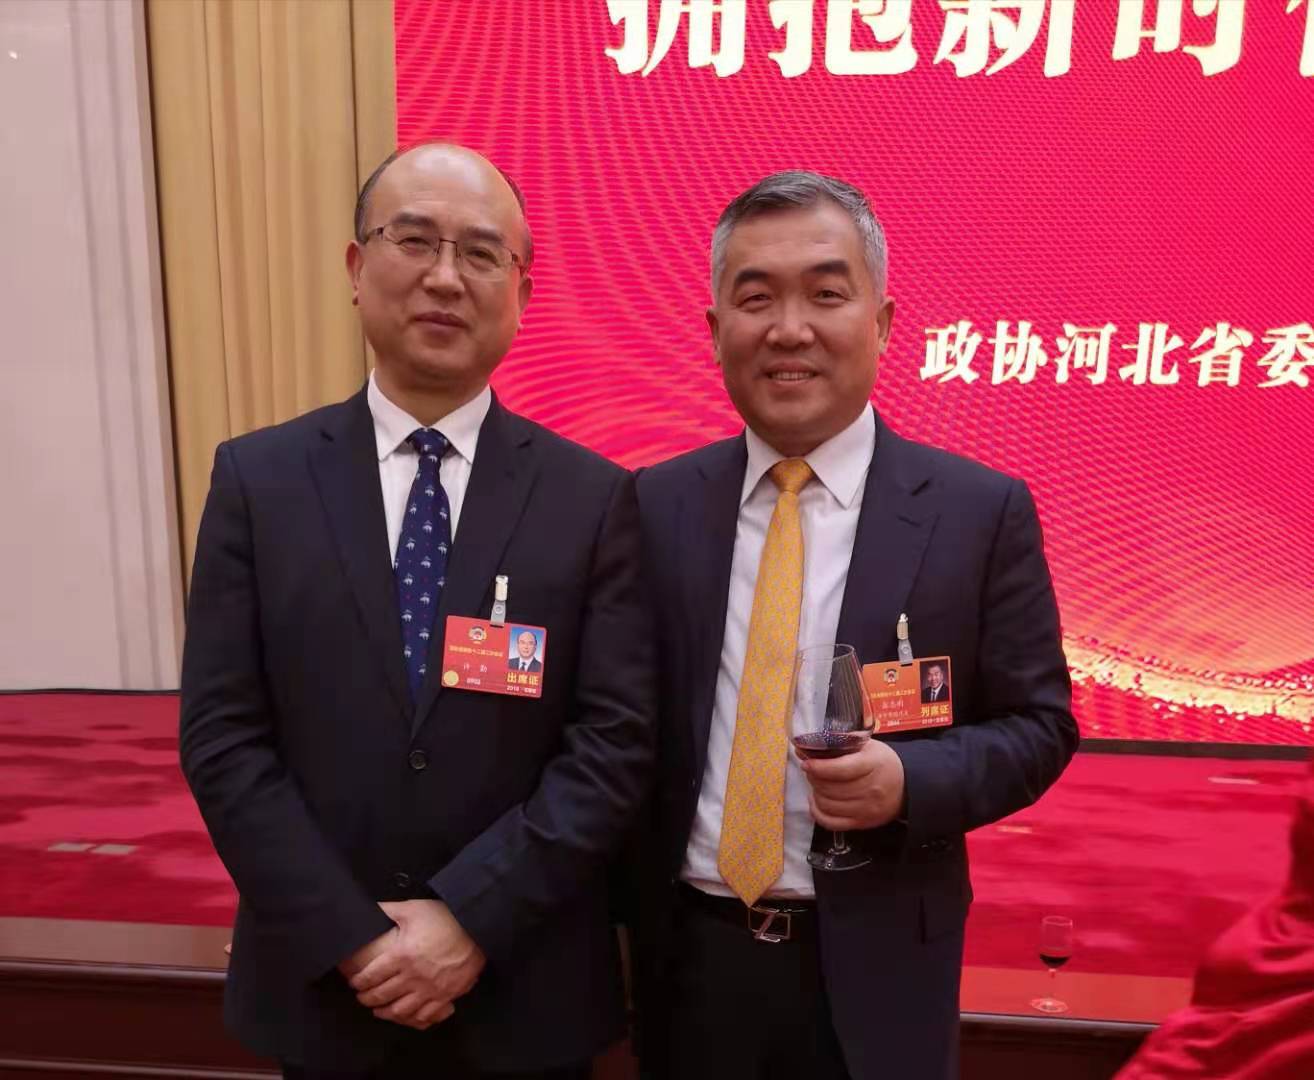 2019年时任河北省省长许勤与董事长在河北省政协会议上合影